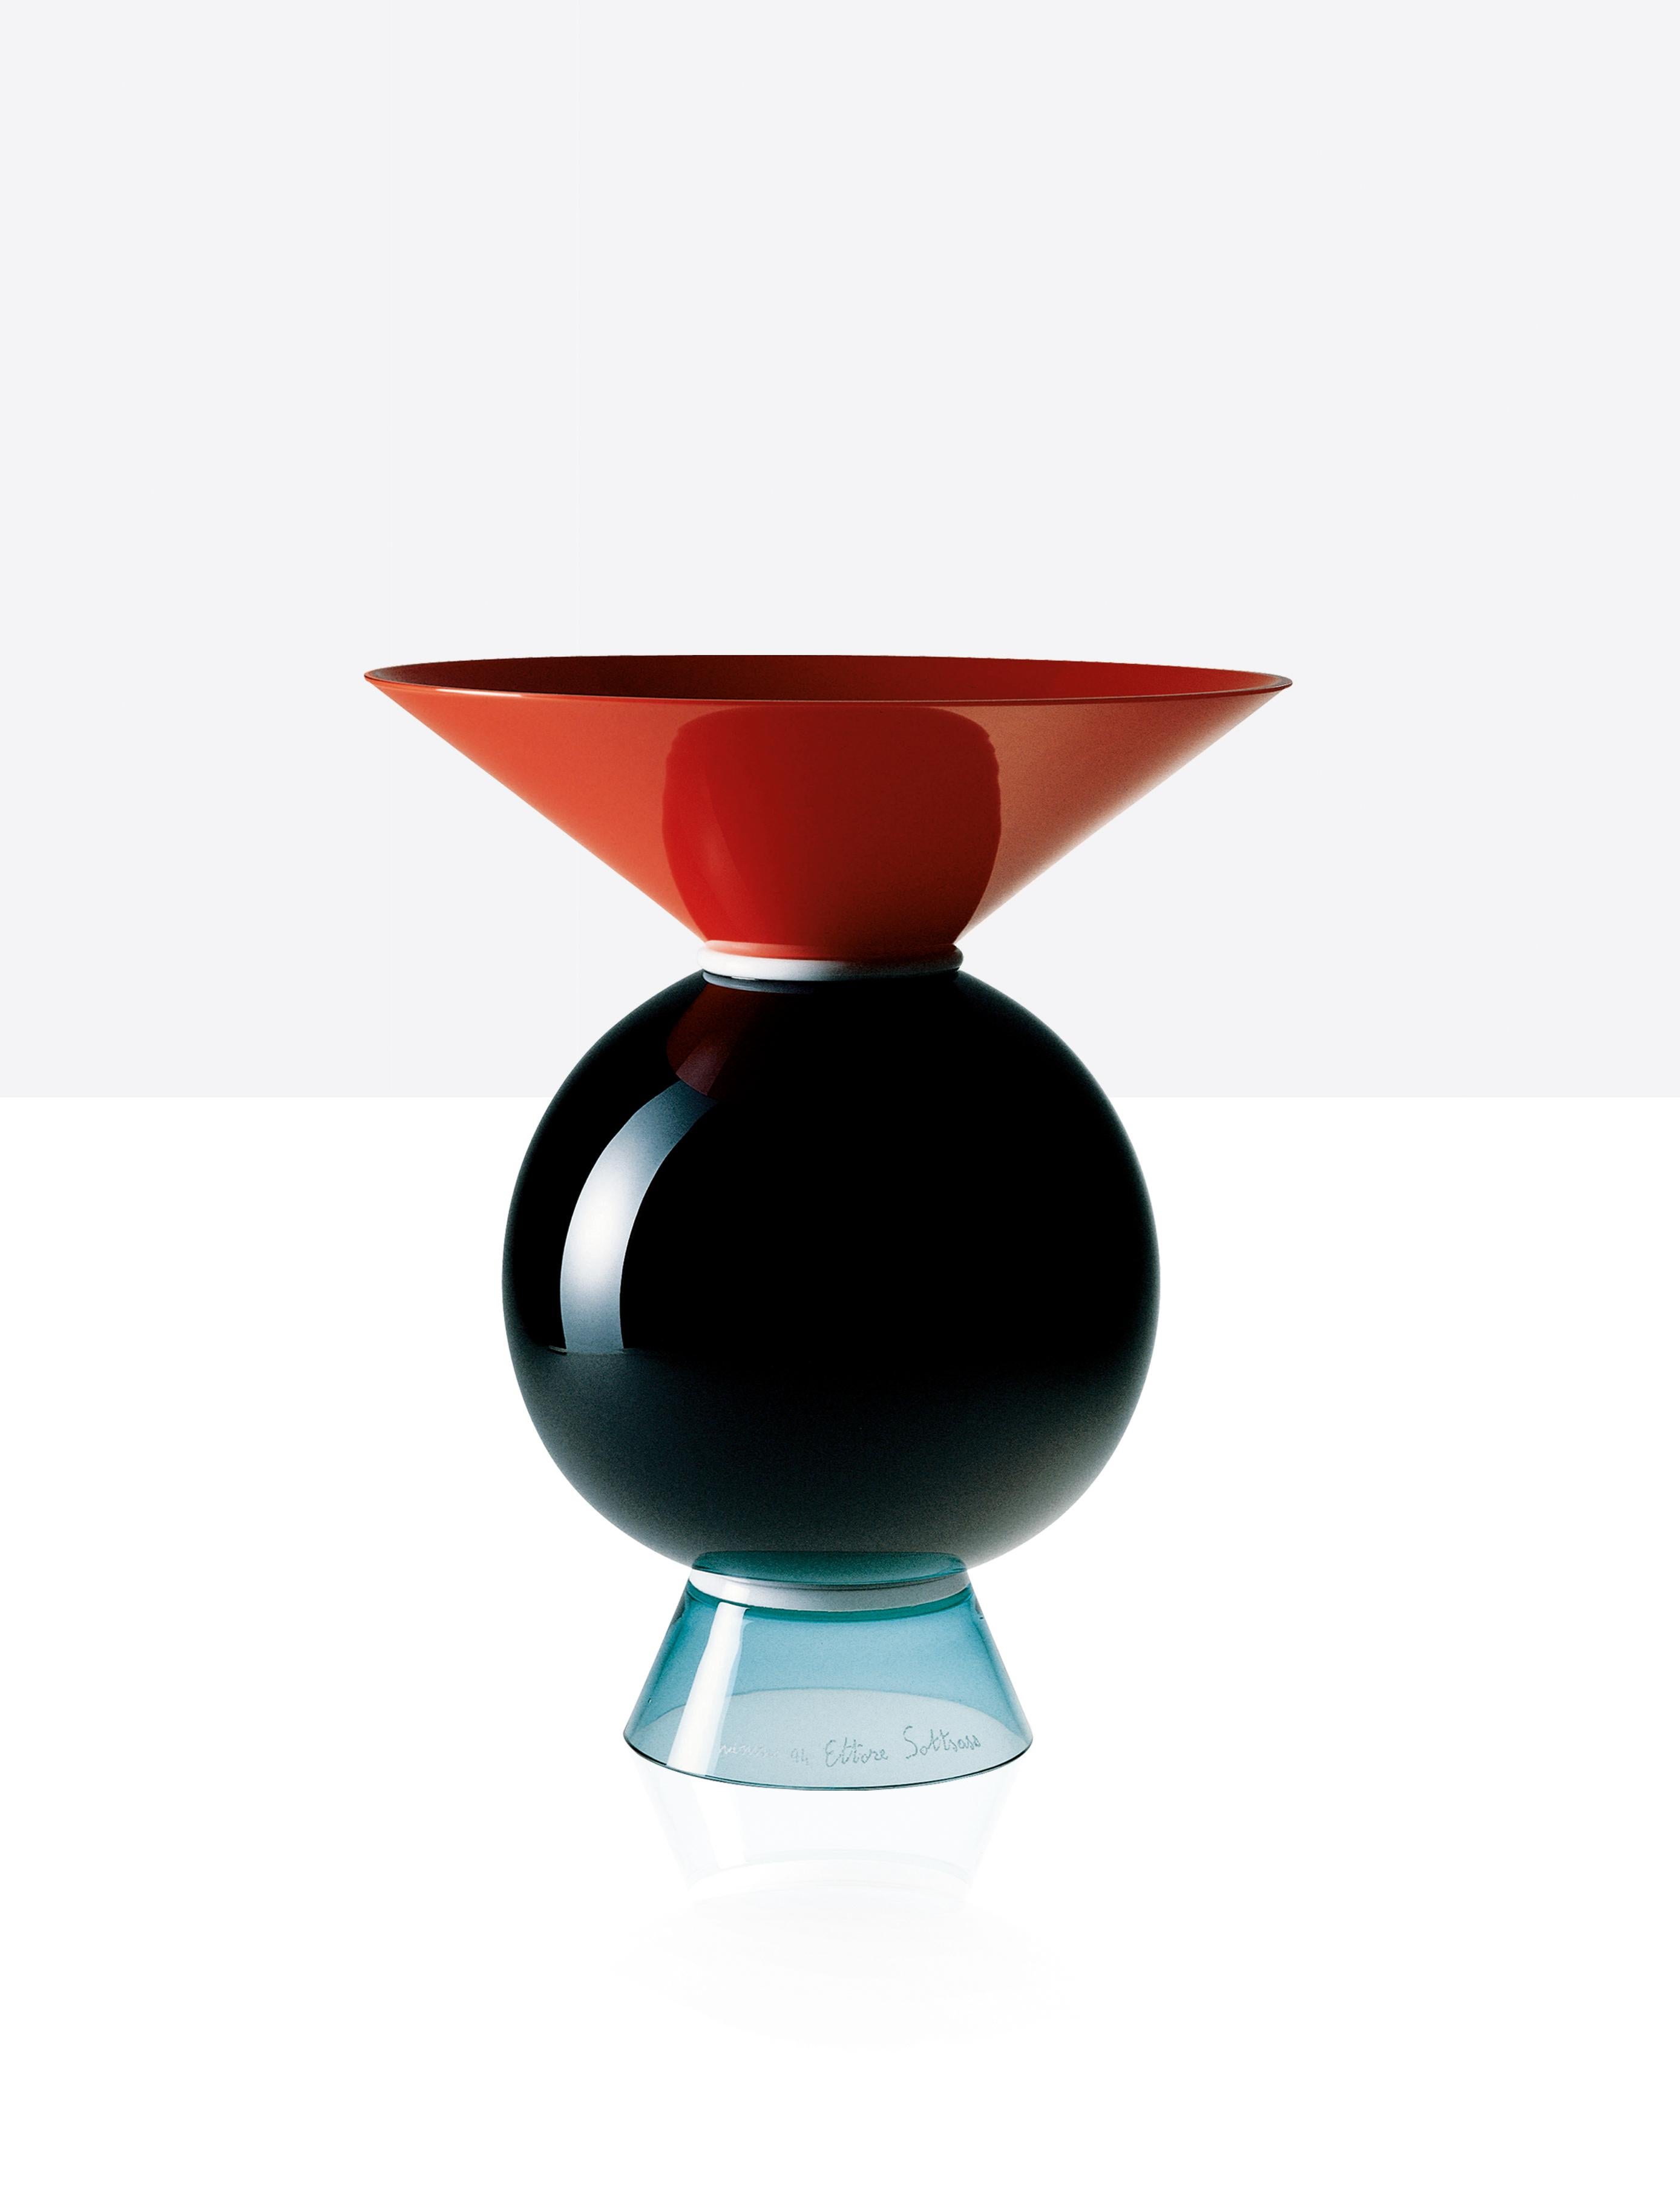 Venini Glasvase mit geometrischem, kreisförmigem Körper und dreieckigem Hals und Sockel. Entworfen von Ettore Sottsass im Jahr 1994. Aus korallenrotem, milchweißem, schwarzem und hellgrünem Glas. Perfekt für die Inneneinrichtung als Behälter oder